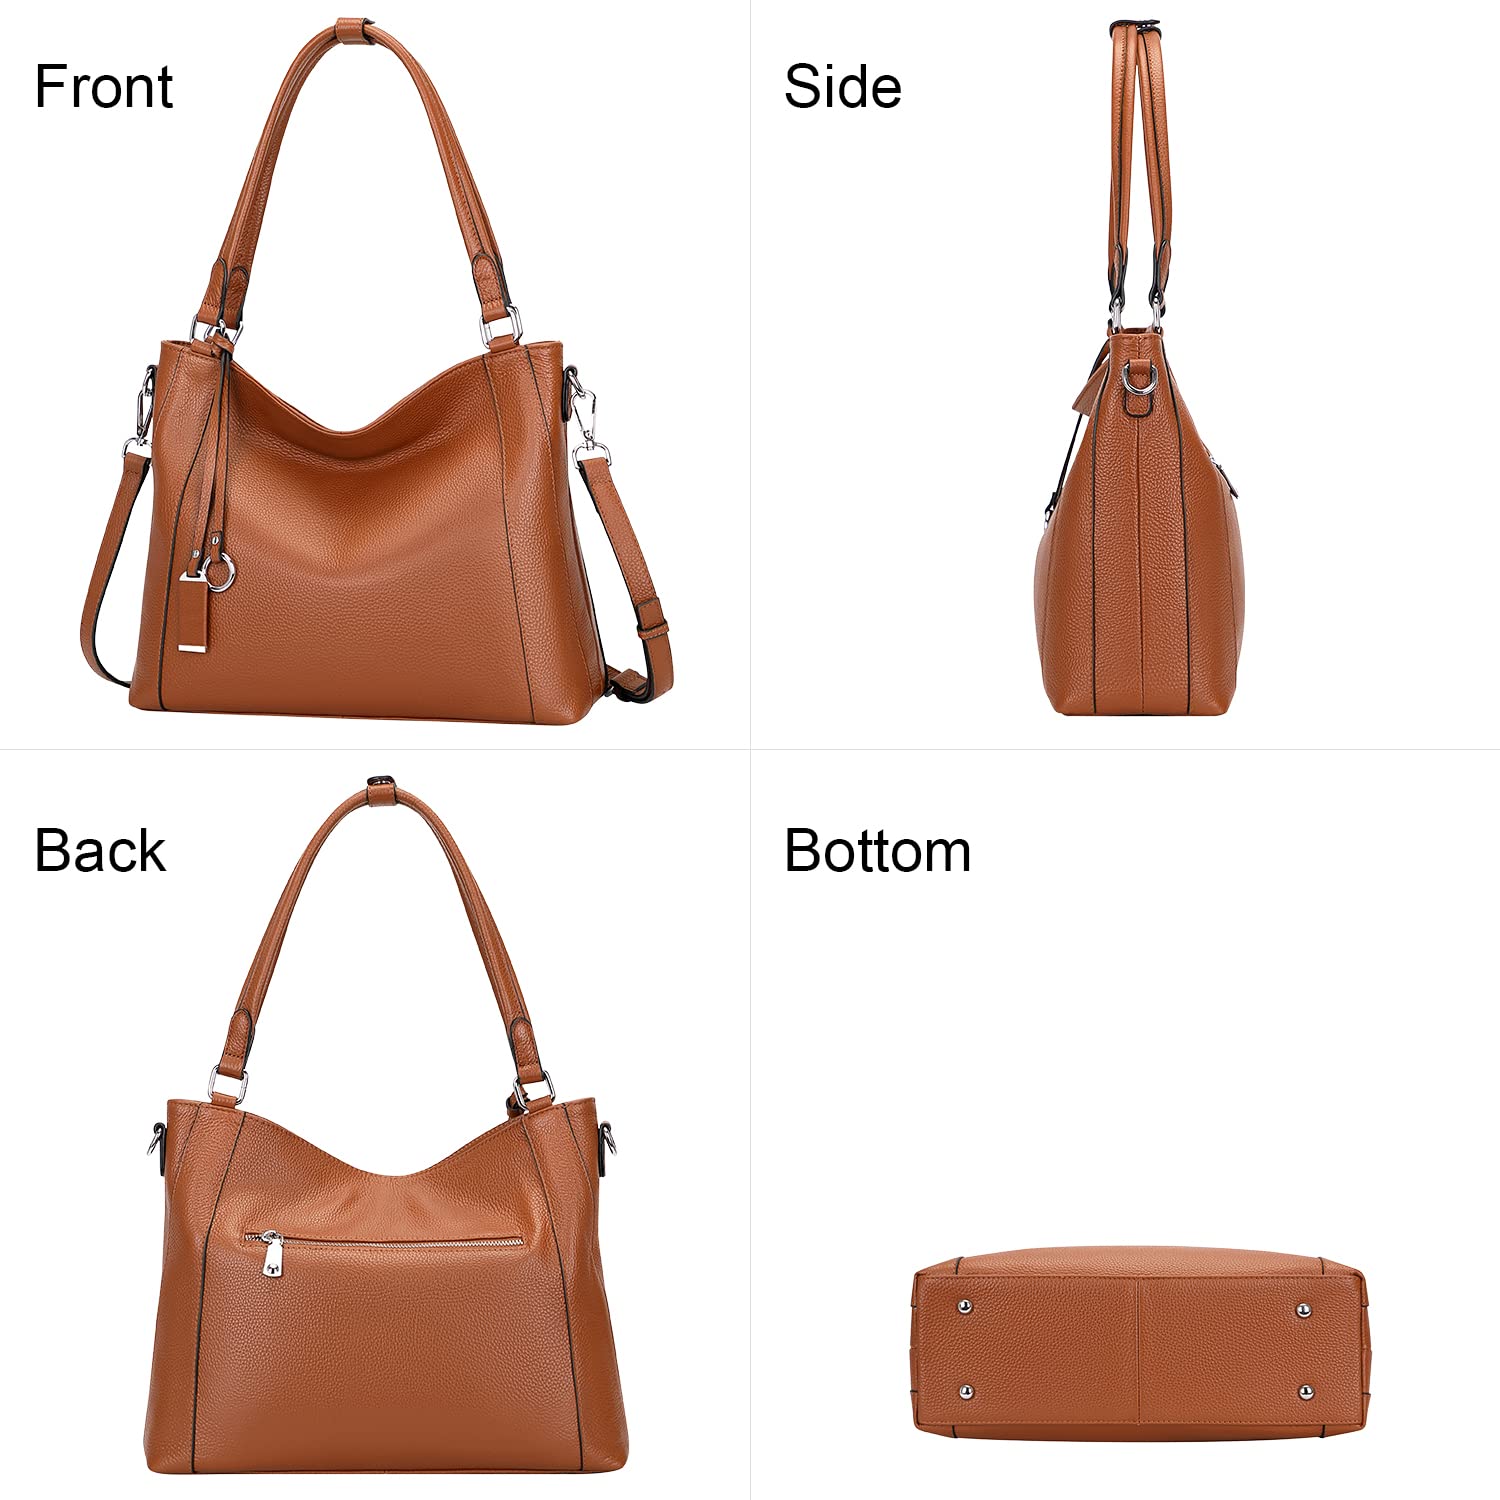 Over Earth Soft Leather Handbags for Women Shoulder Hobo Bag Large Tote Crossbody Bag, 10-orange Brown, Large Size